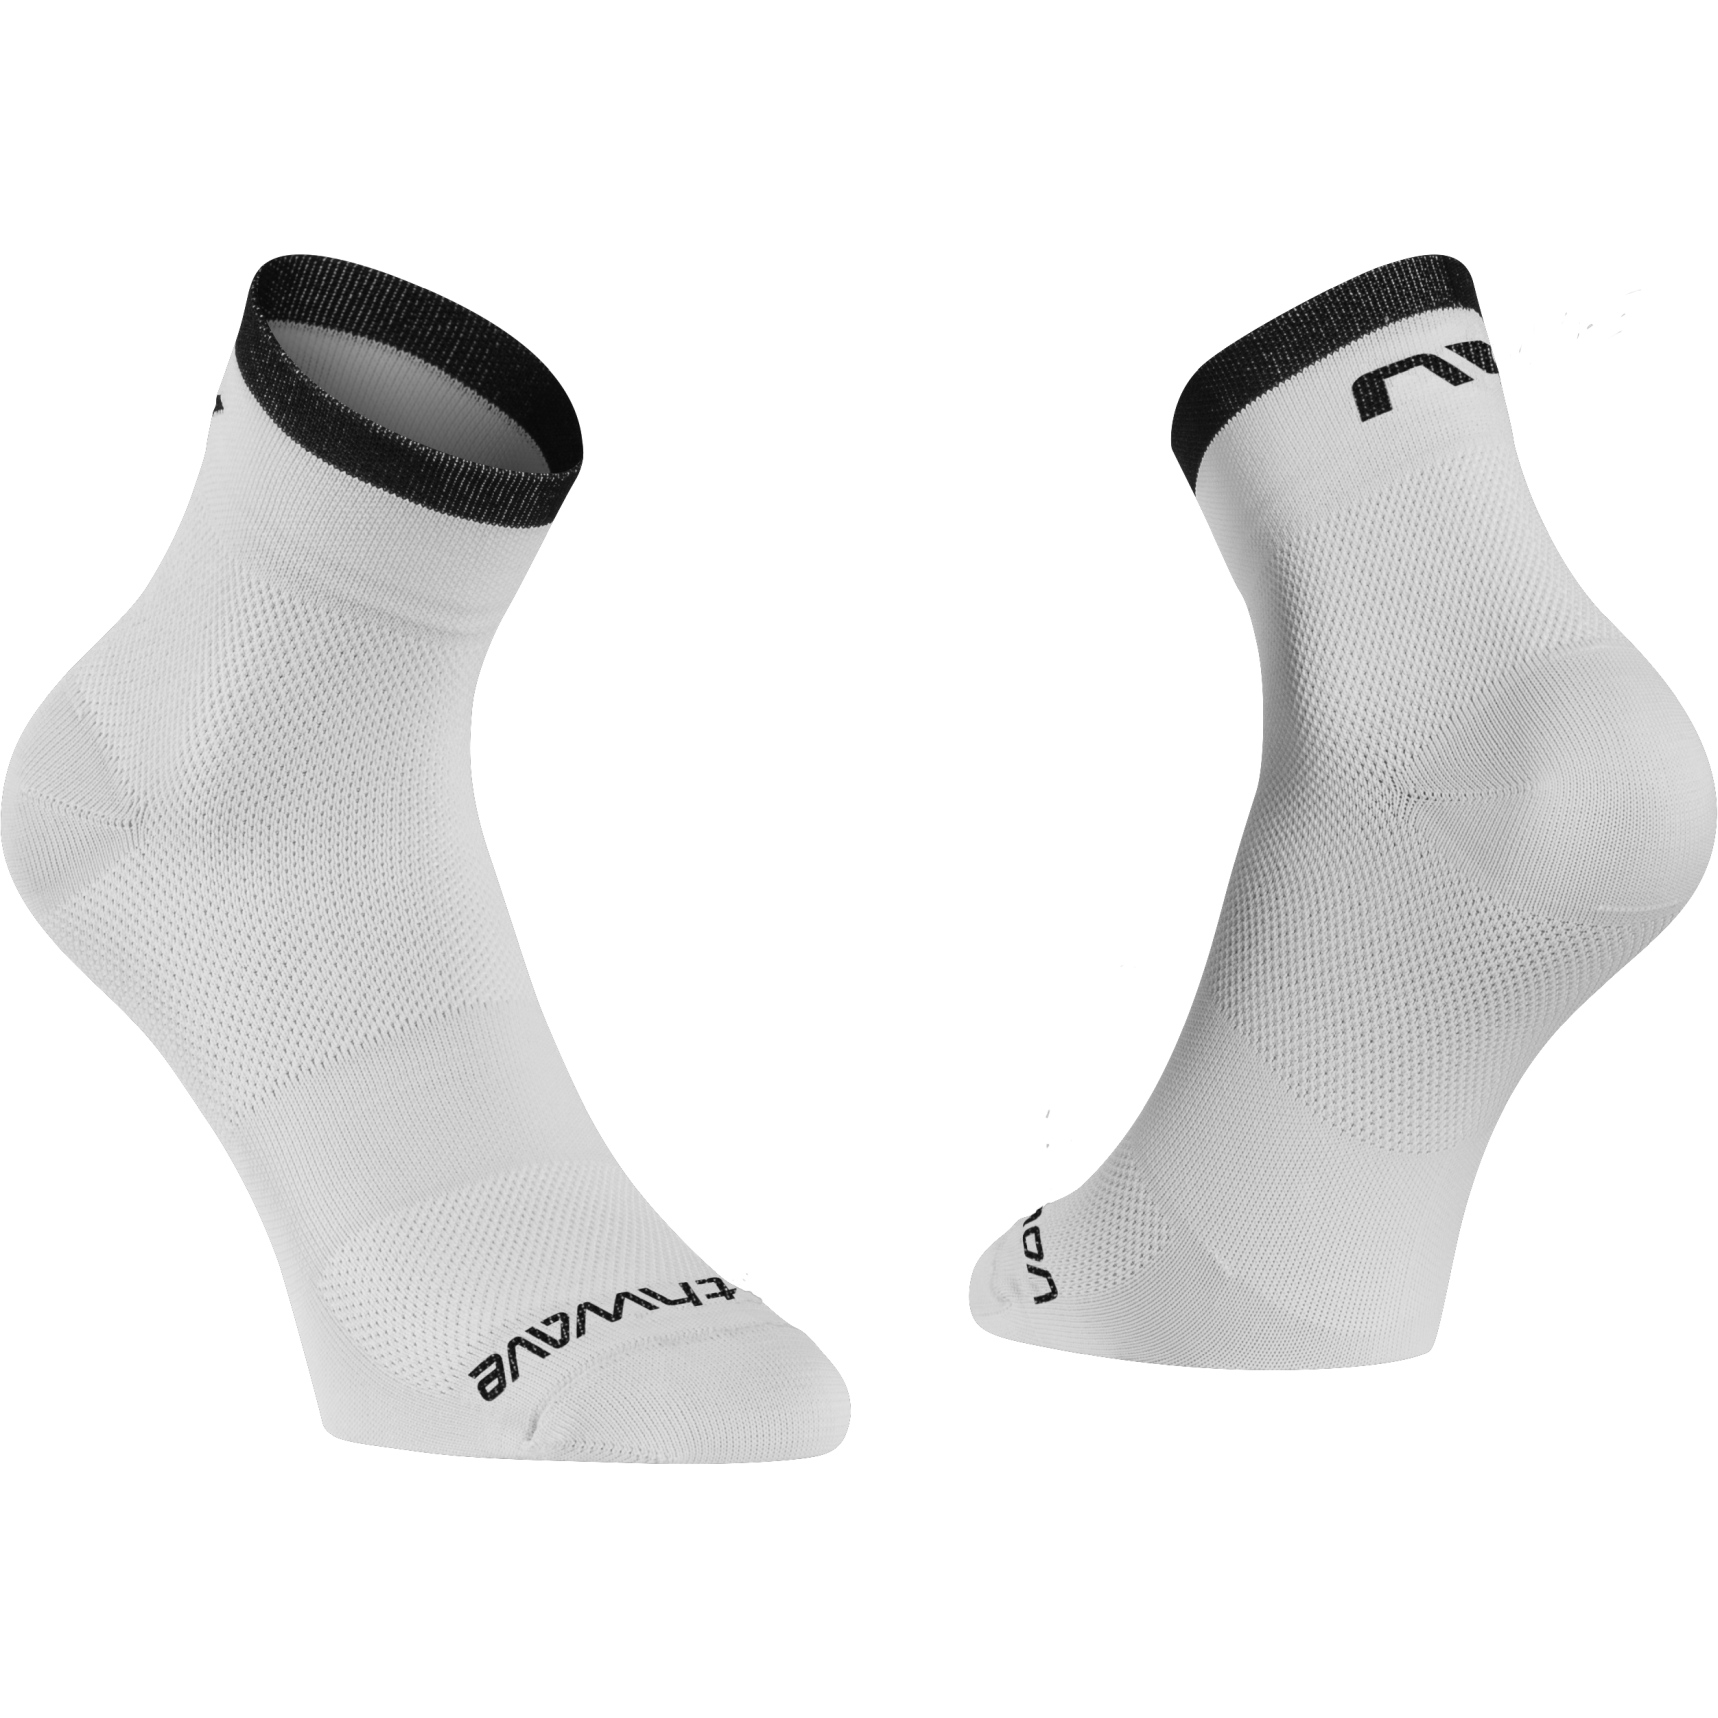 Produktbild von Northwave Origin Socken - weiß/schwarz 51